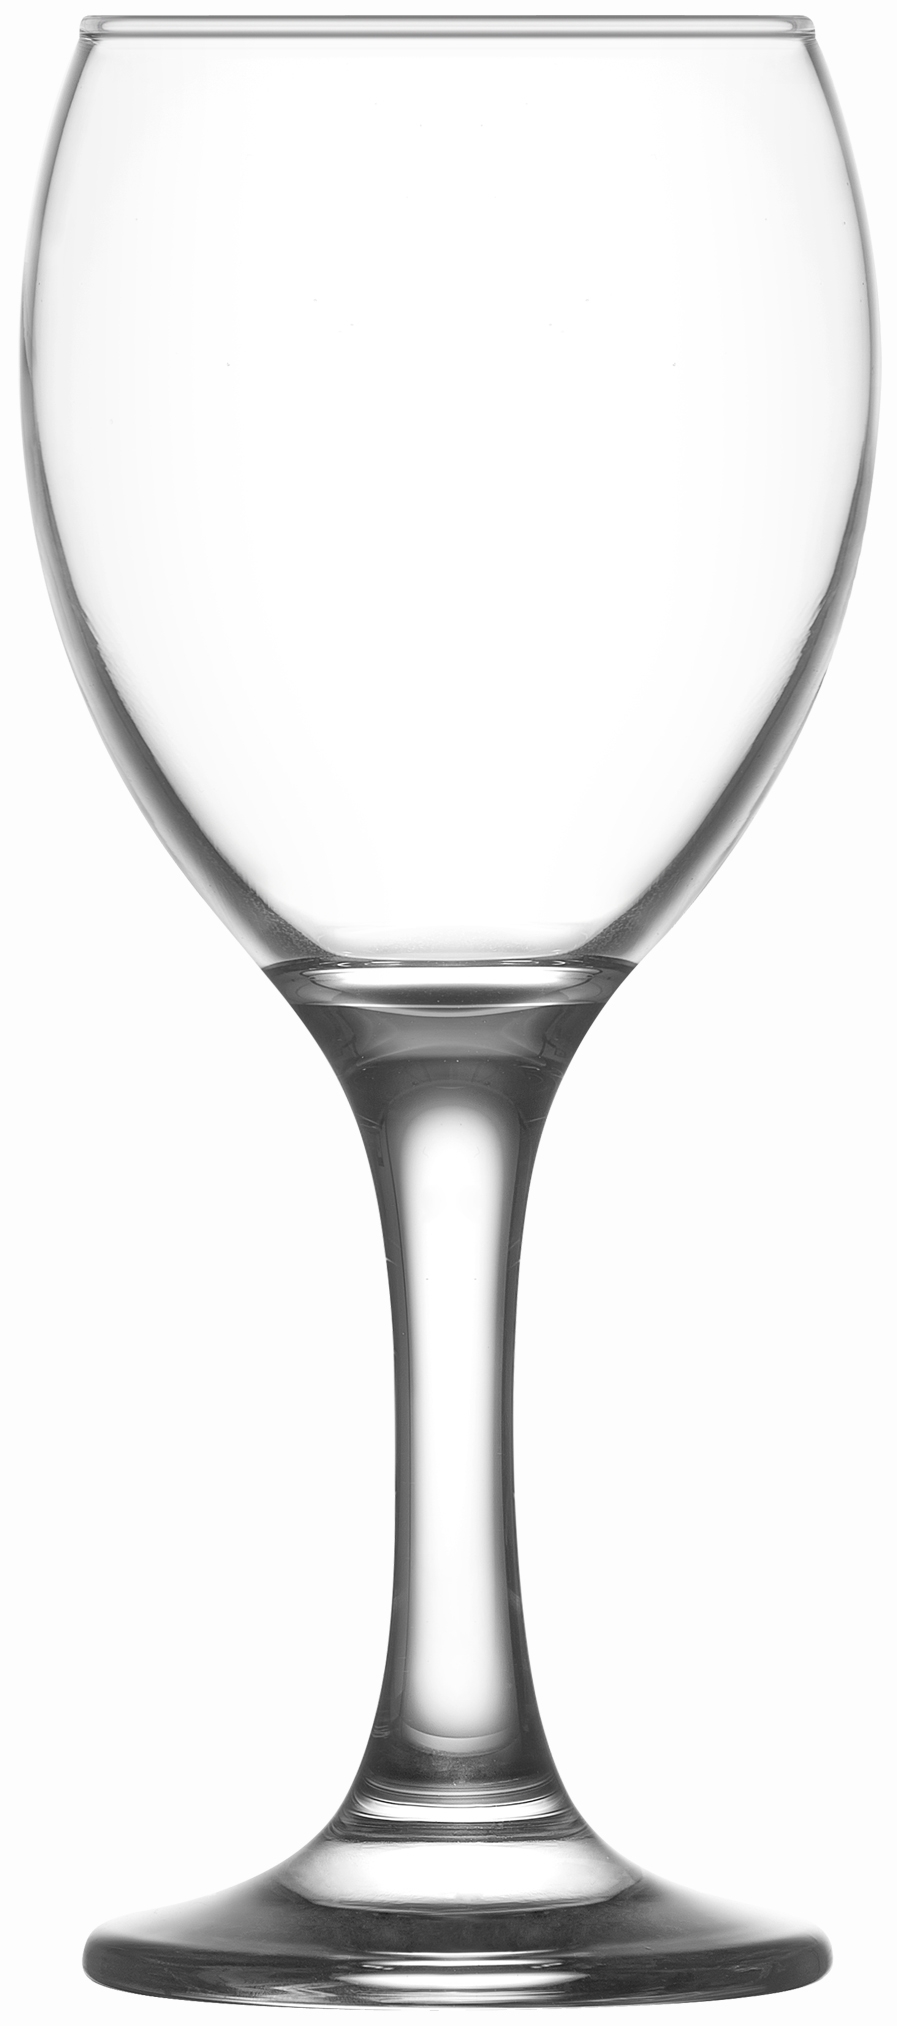 Ποτήρι Κρασιού Γυάλινο Διάφανο Empire LAV 245ml LVEMP55325Z (Σετ 12 Τεμάχια) (Υλικό: Γυαλί, Χρώμα: Διάφανο , Μέγεθος: Κολωνάτο) - LAV - LVEMP55325Z